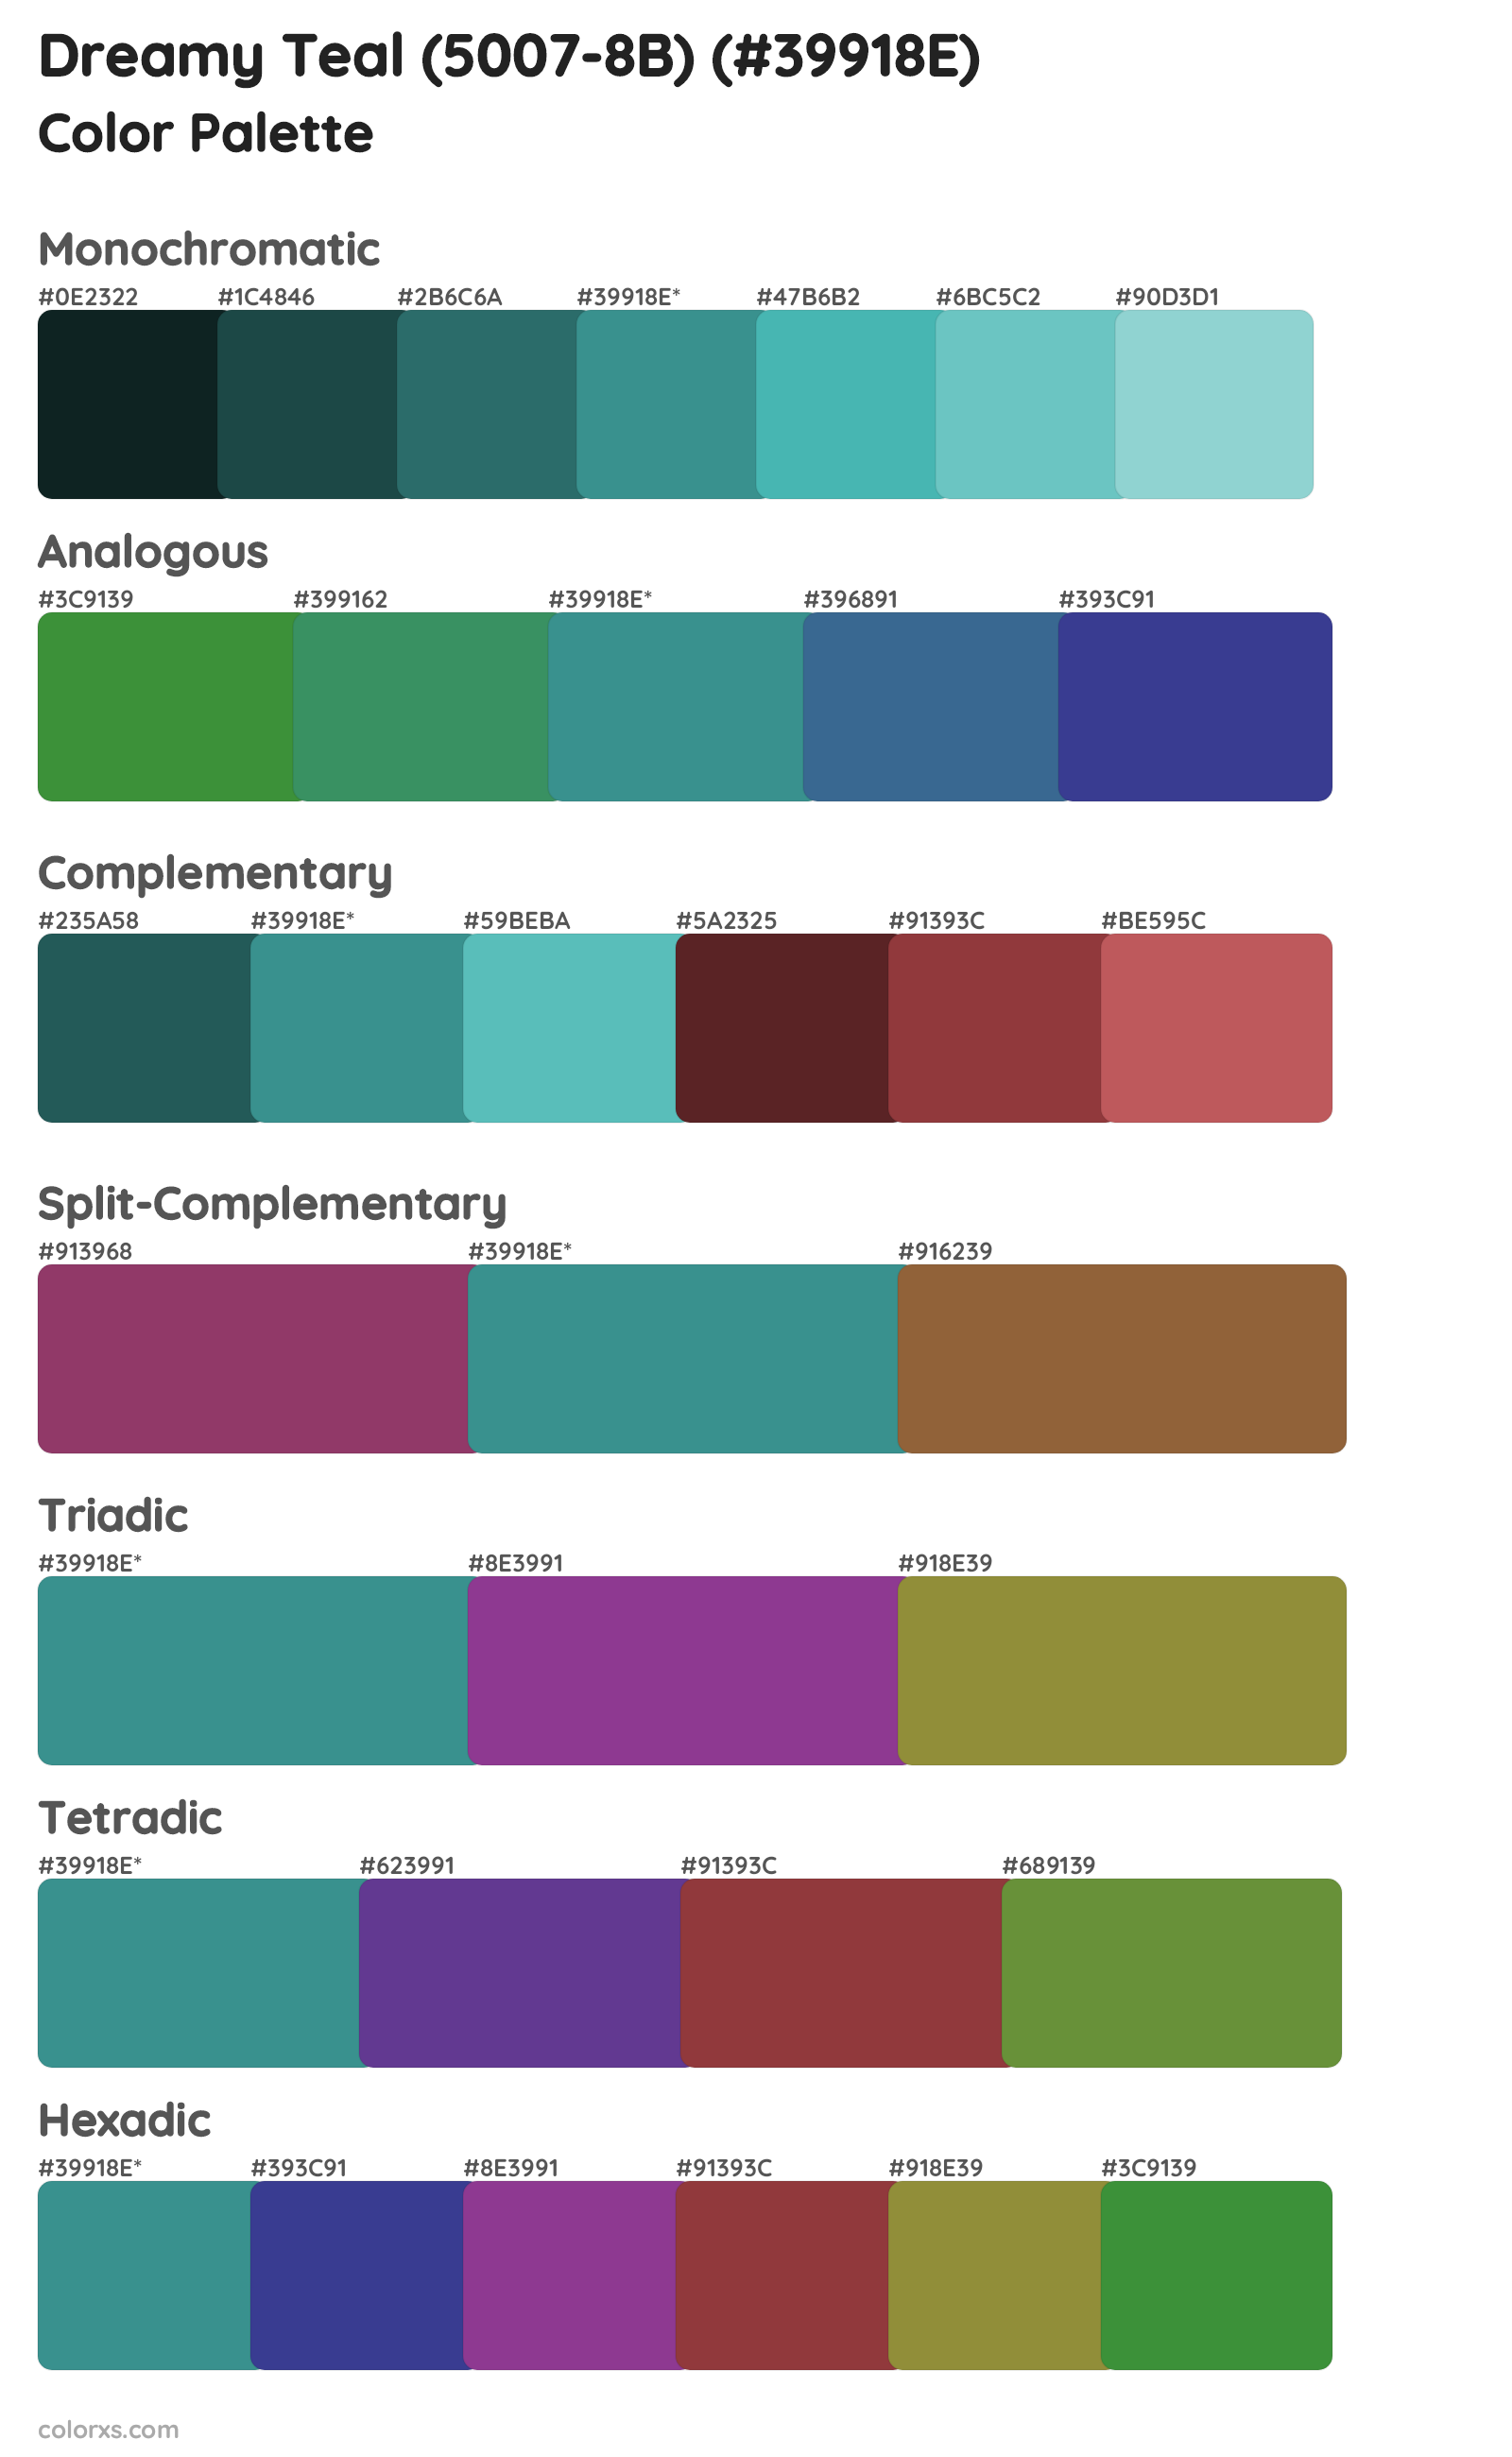 Dreamy Teal (5007-8B) Color Scheme Palettes